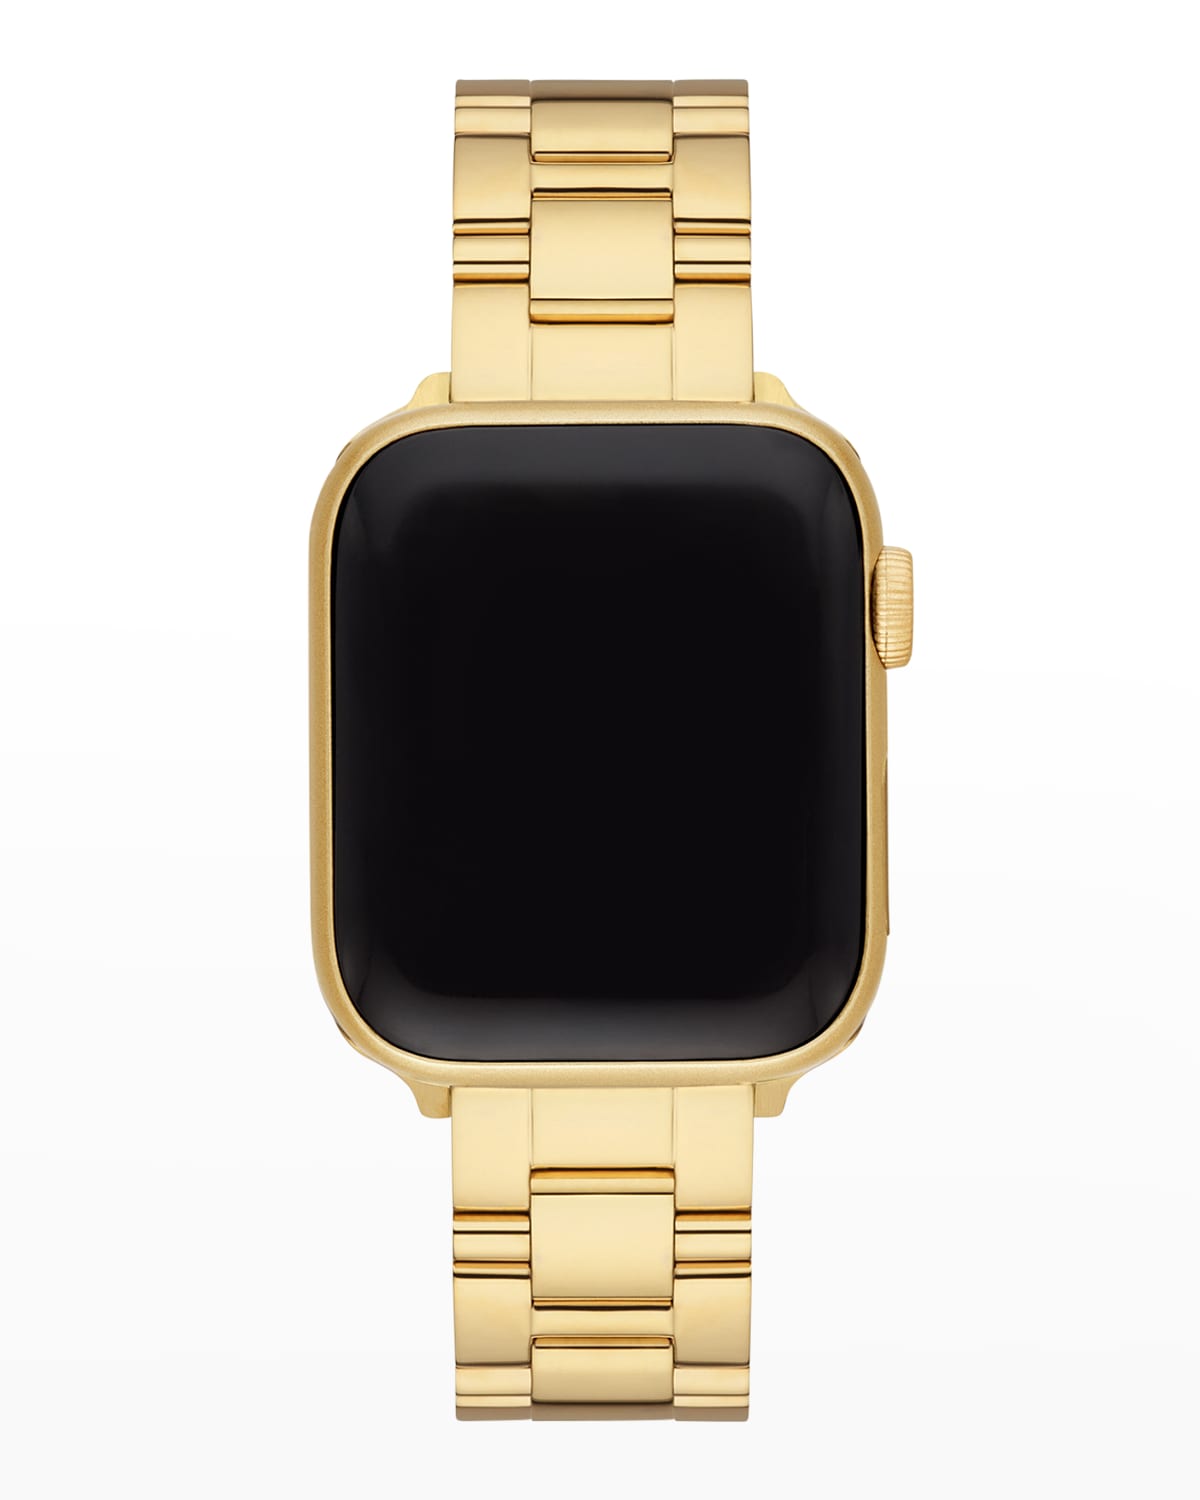 Apple Watch 3-Link Bracelet Strap in Gold-Tone